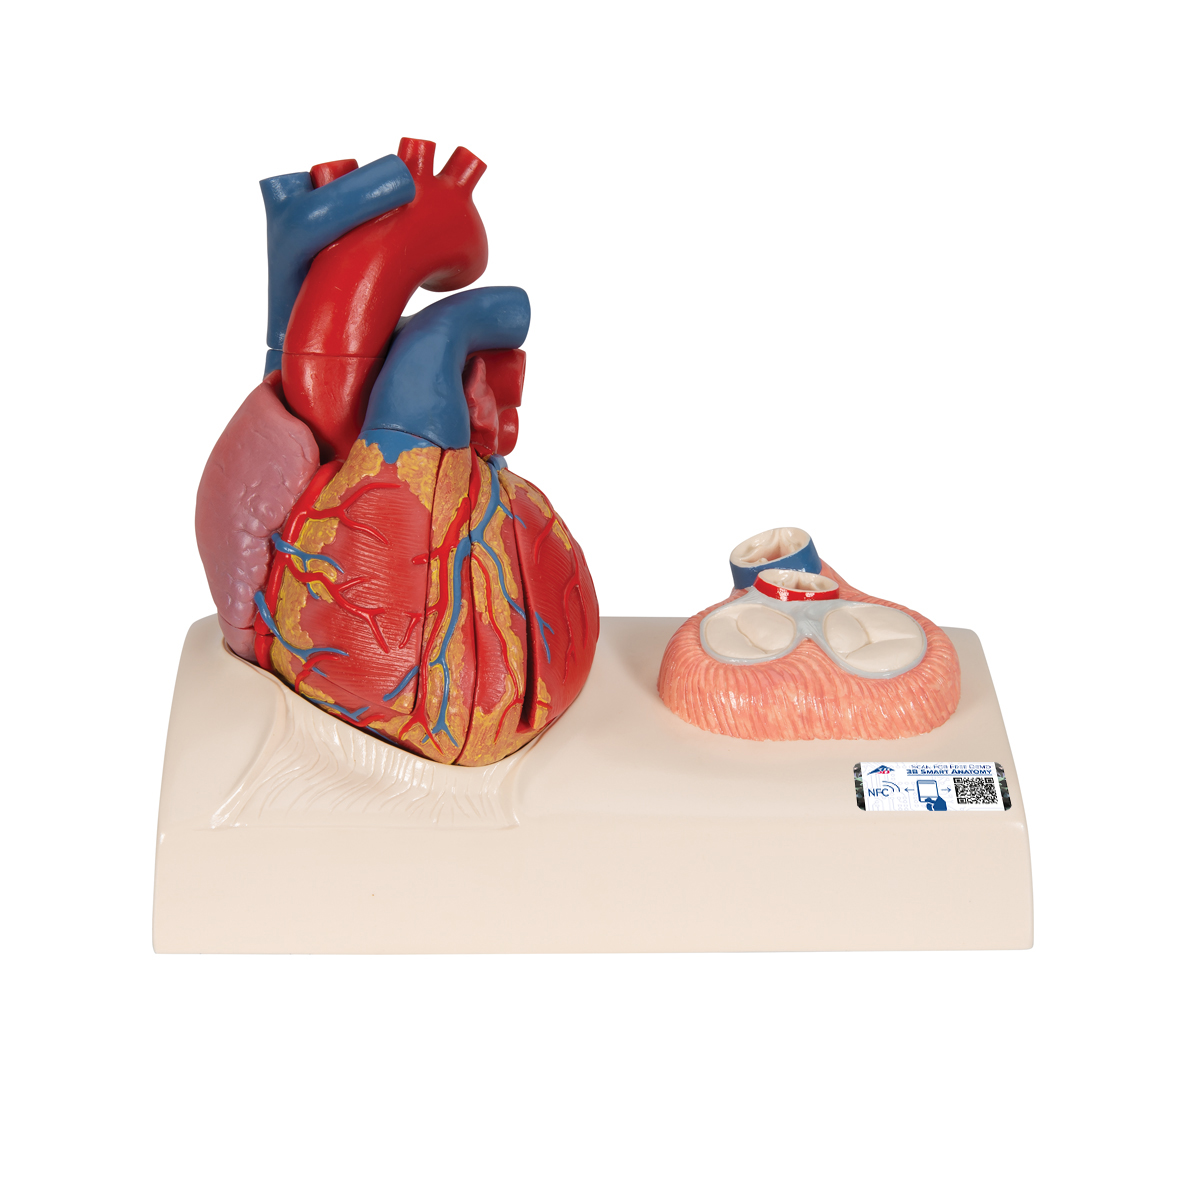 Herzmodell in Lebensgröße mit Systole auf Sockel, 5-teilig - 3B Smart Anatomy, Bestellnummer 1010006, G01, 3B Scientific